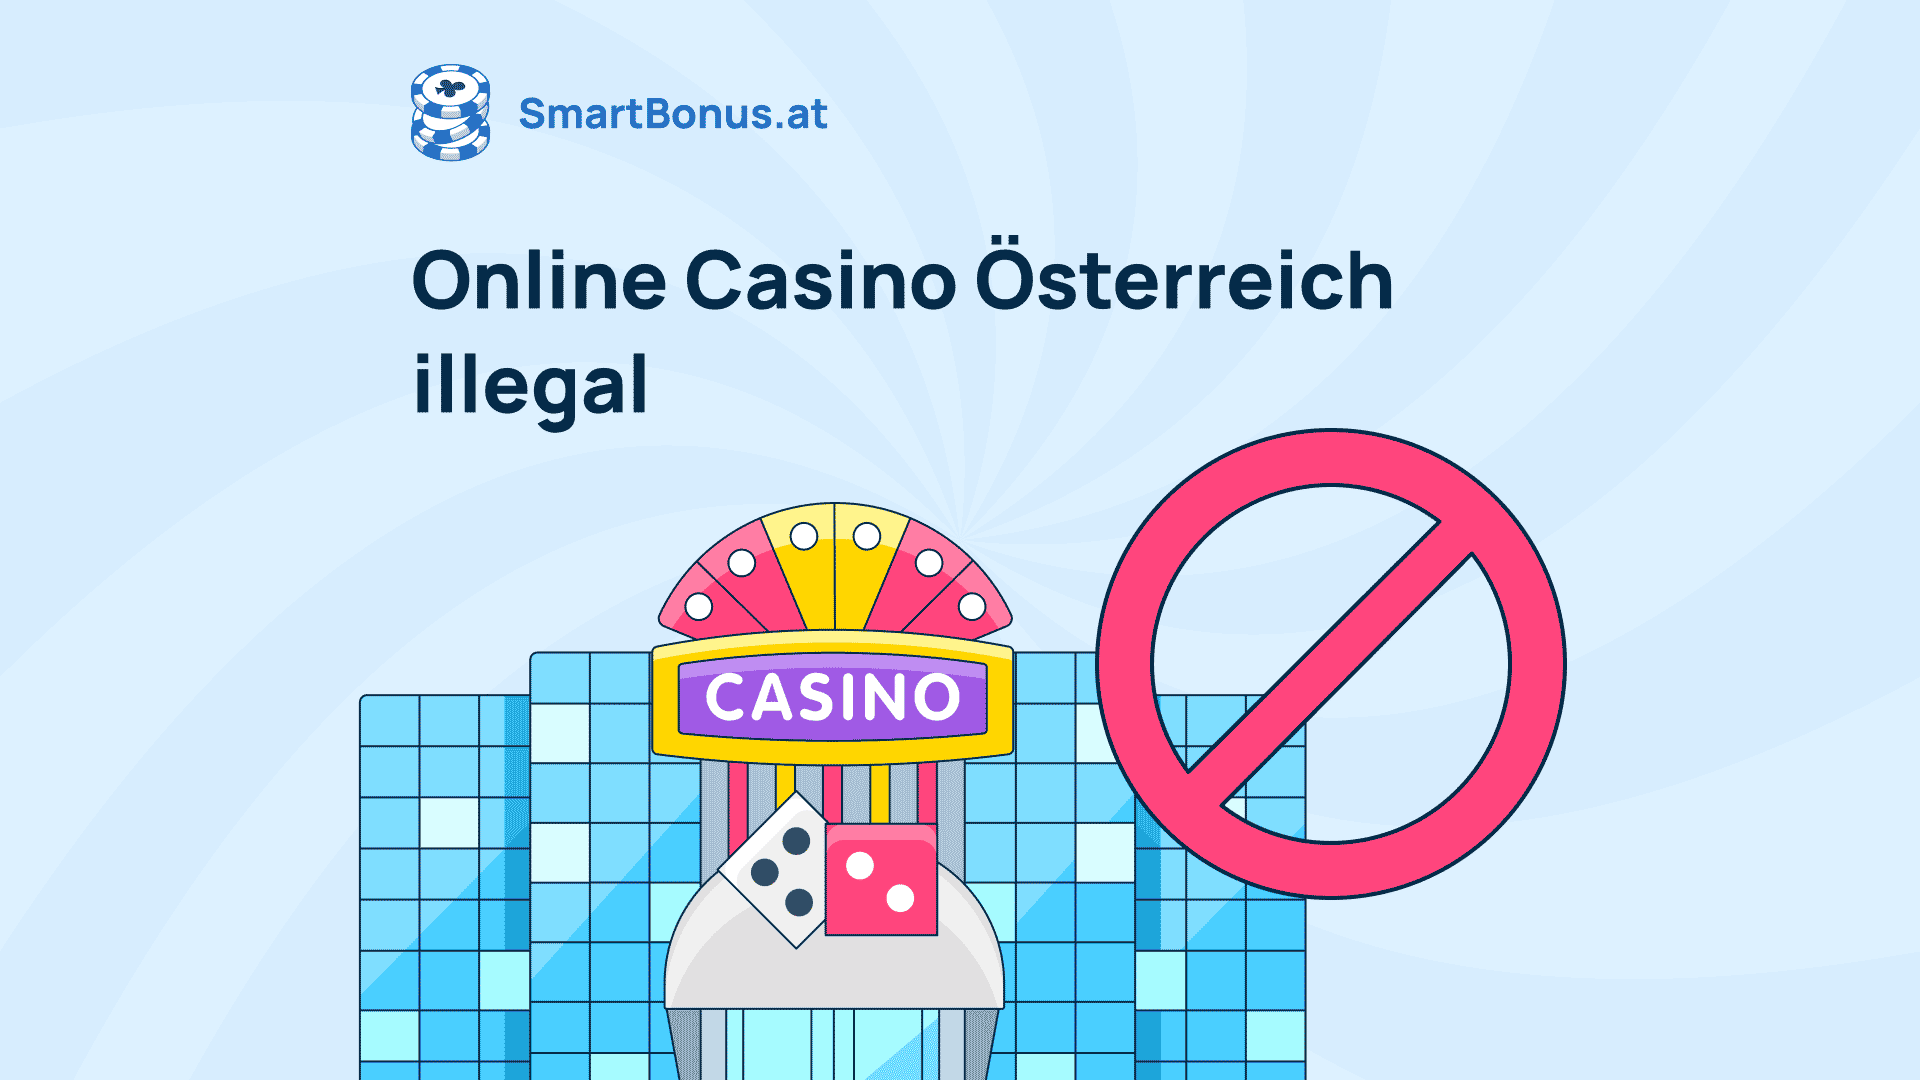 59% des Marktes sind an Online Casinos Österreich interessiert